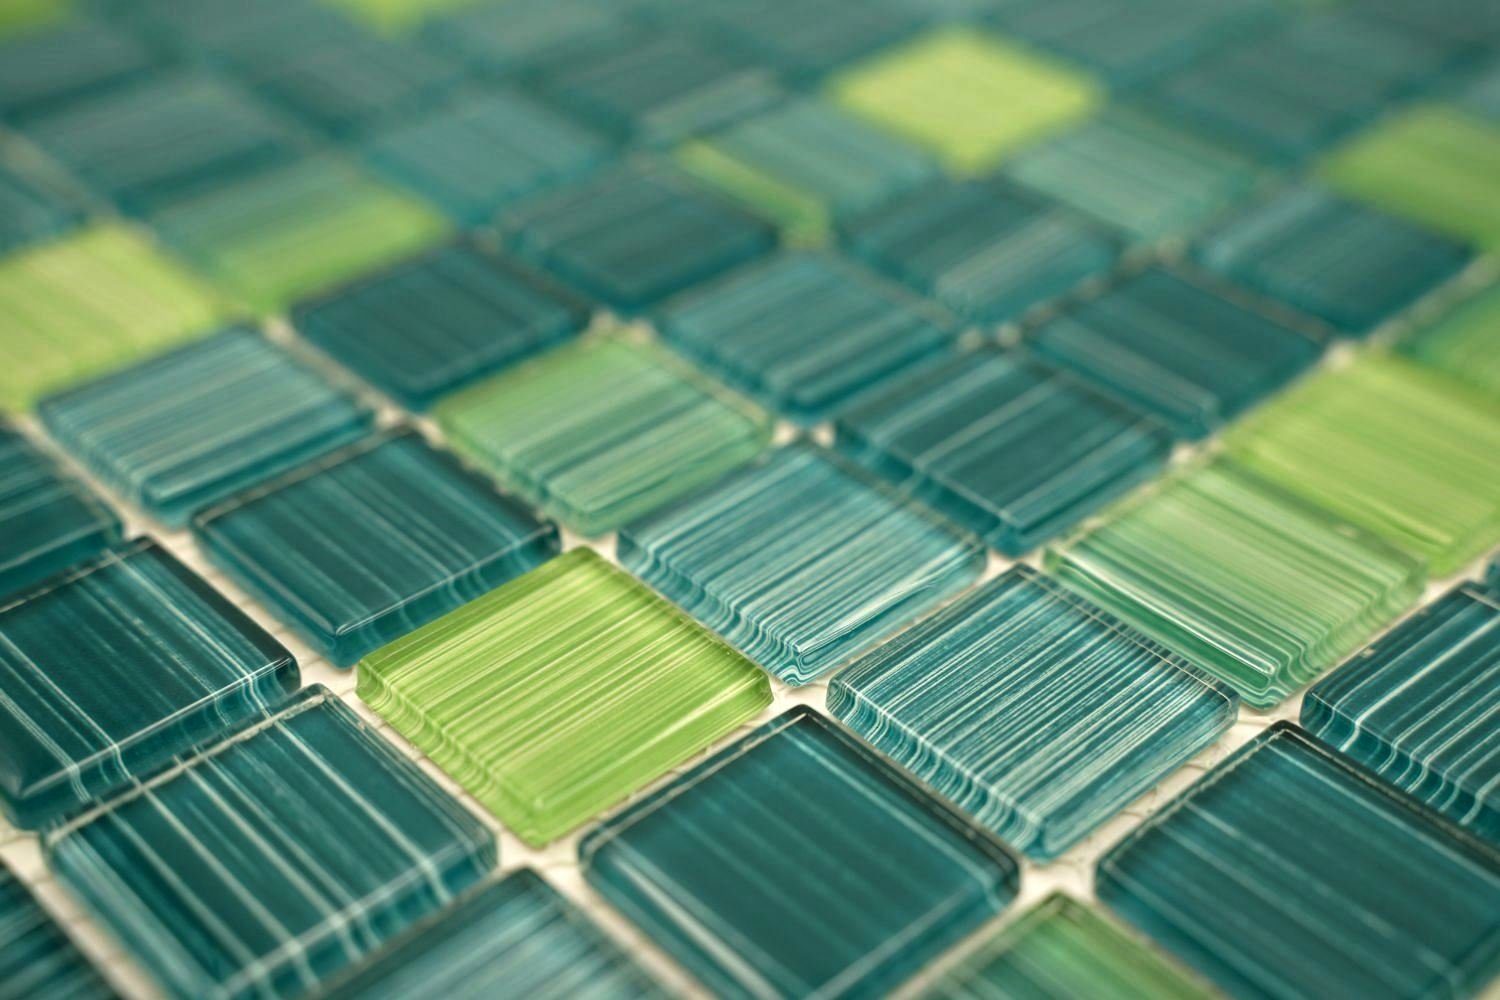 Mosani Mosaikfliesen Glasmosaik Mosaikfliesen Strich Schwimmbadmosaik grün türkis gelb